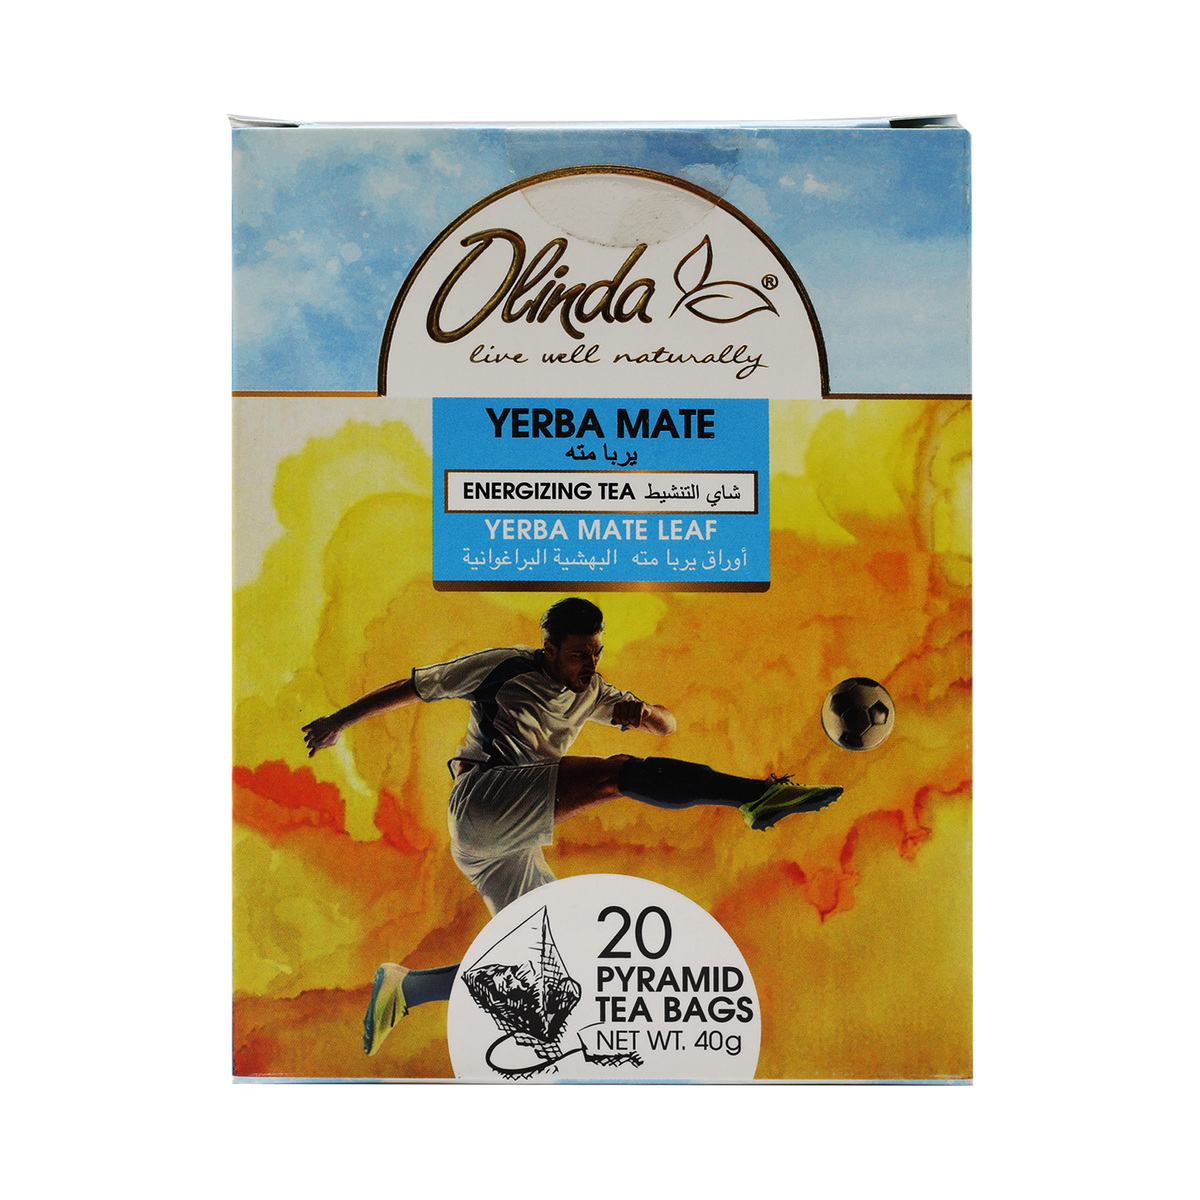 Olinda Yerba Mate Tea 20 Teabags